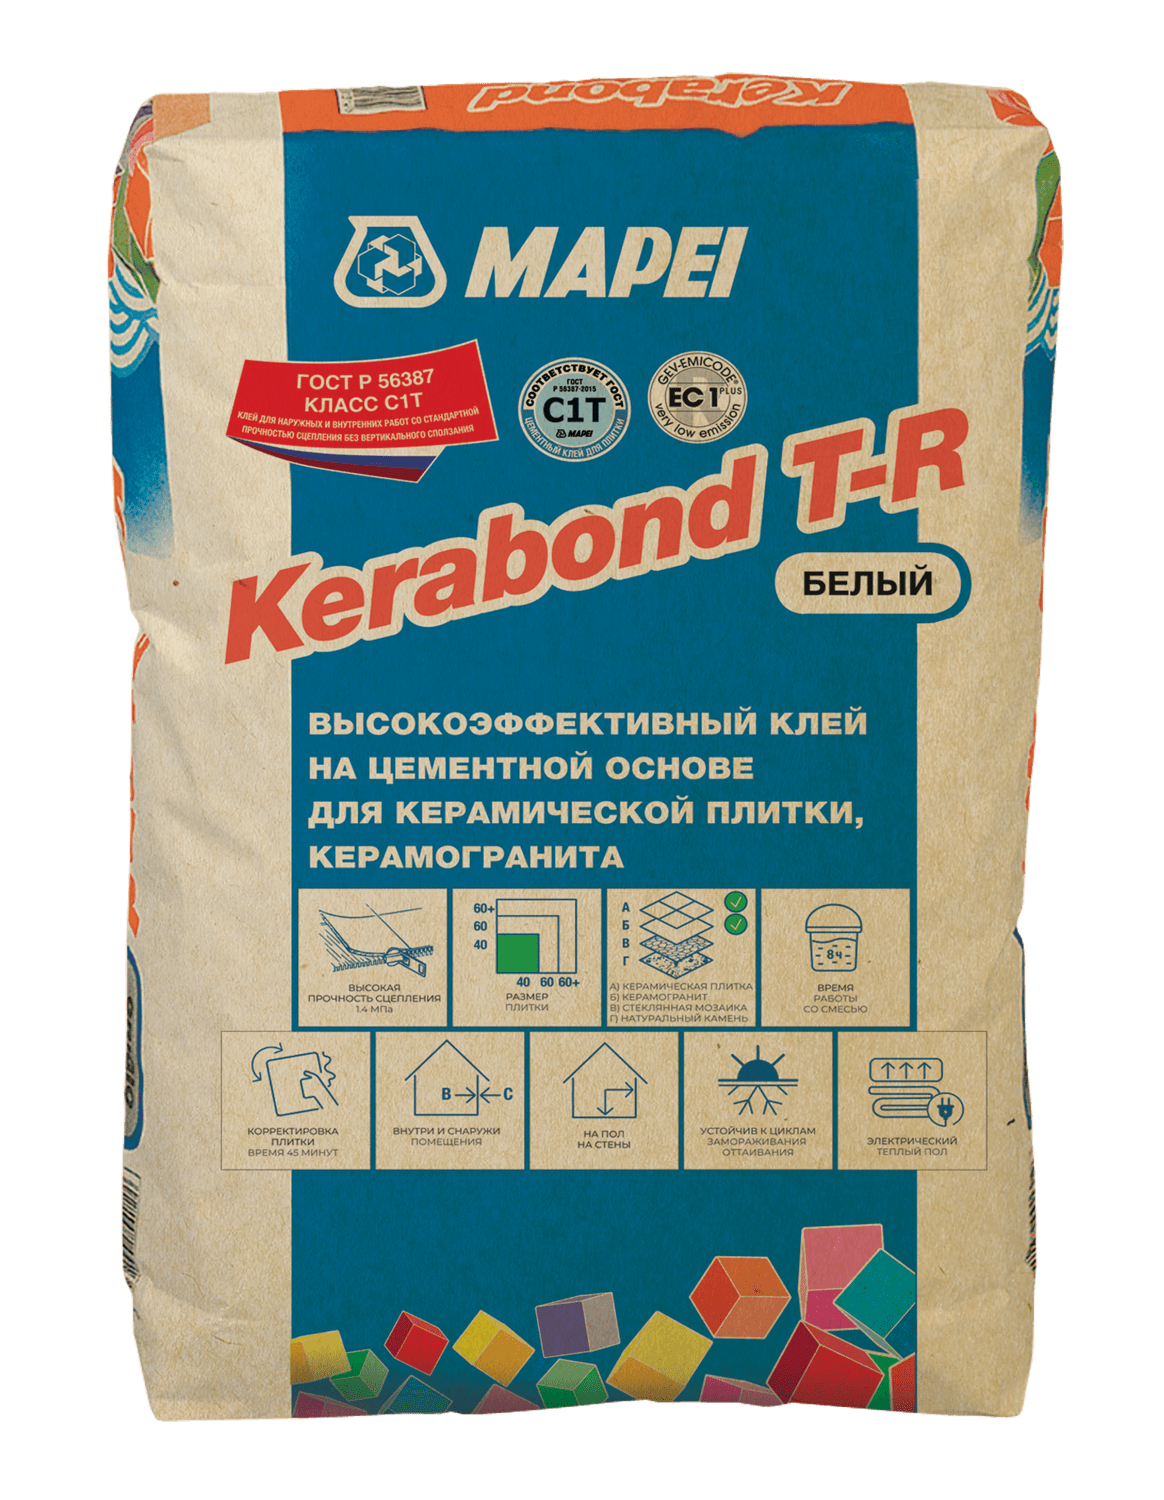 Клей для керамической плитки и керамогранита KERABOND T-R, белый, Mapei, 25 кг